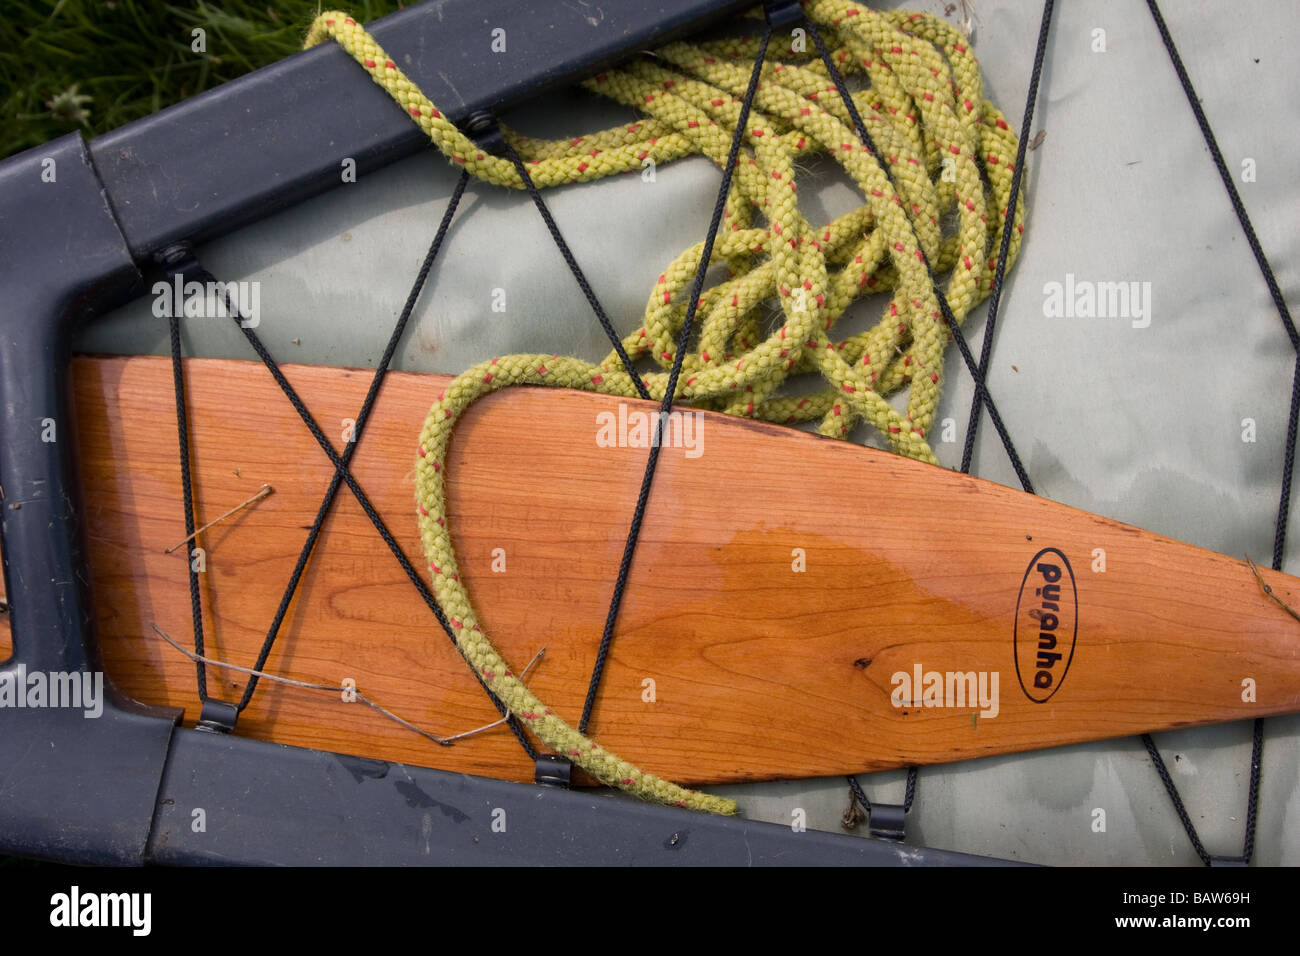 Sac de flottabilité palette de bois canadienne de canotage canotage rivière Medway Kent England UK Europe Banque D'Images